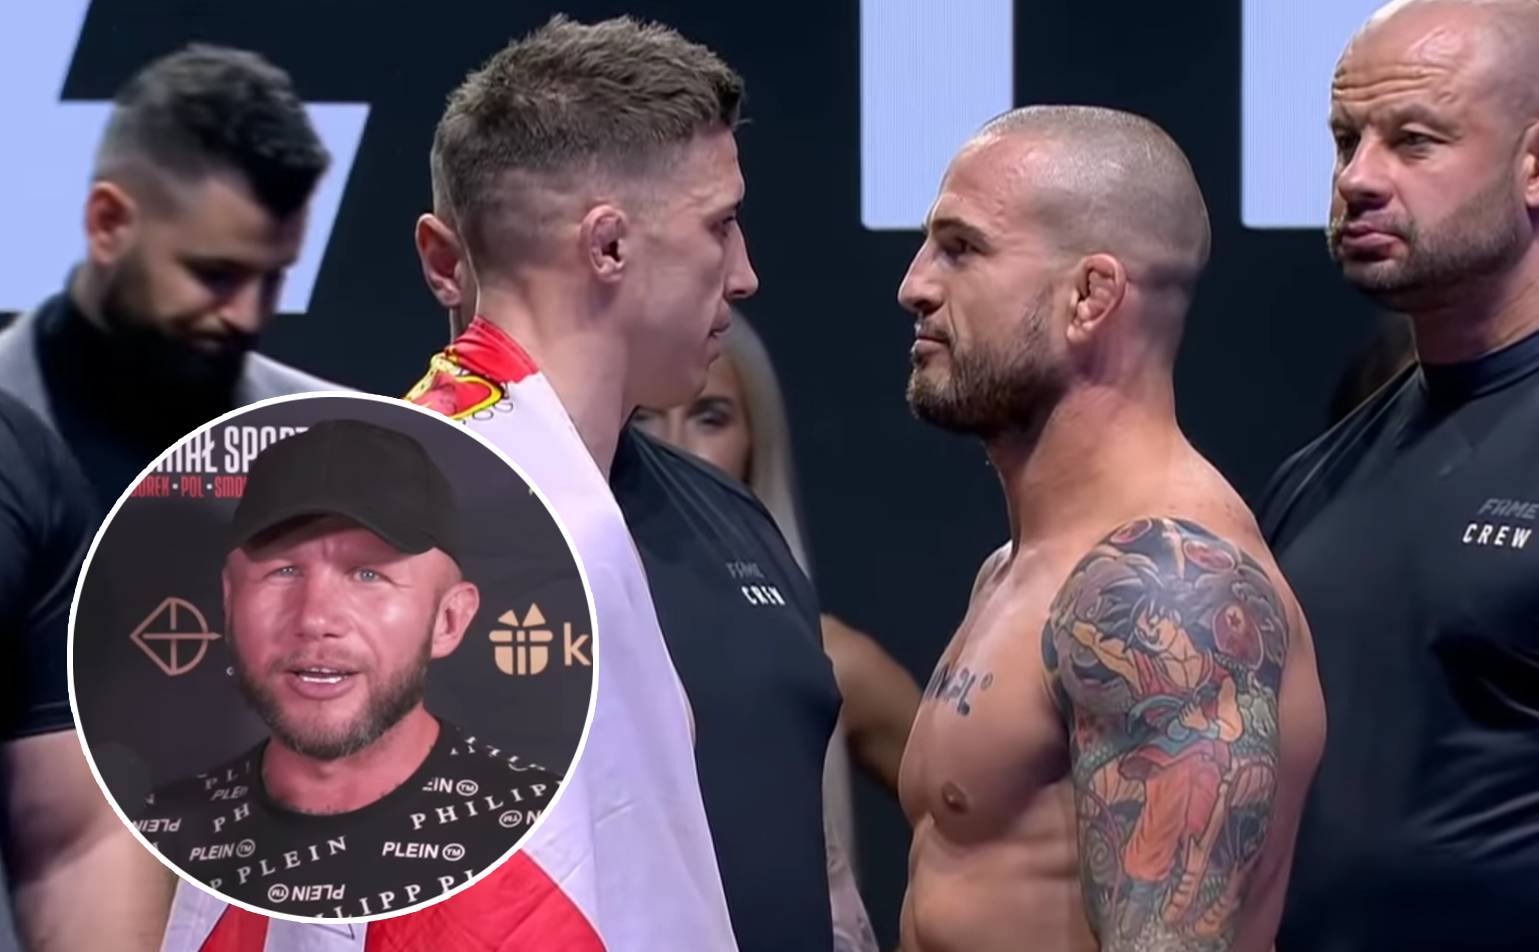 (VIDEO) Piotr Pająk typuje walkę wieczoru Fame MMA 11: "Będą mieli strasznie skasowane ryje! Ja stawiam na..."